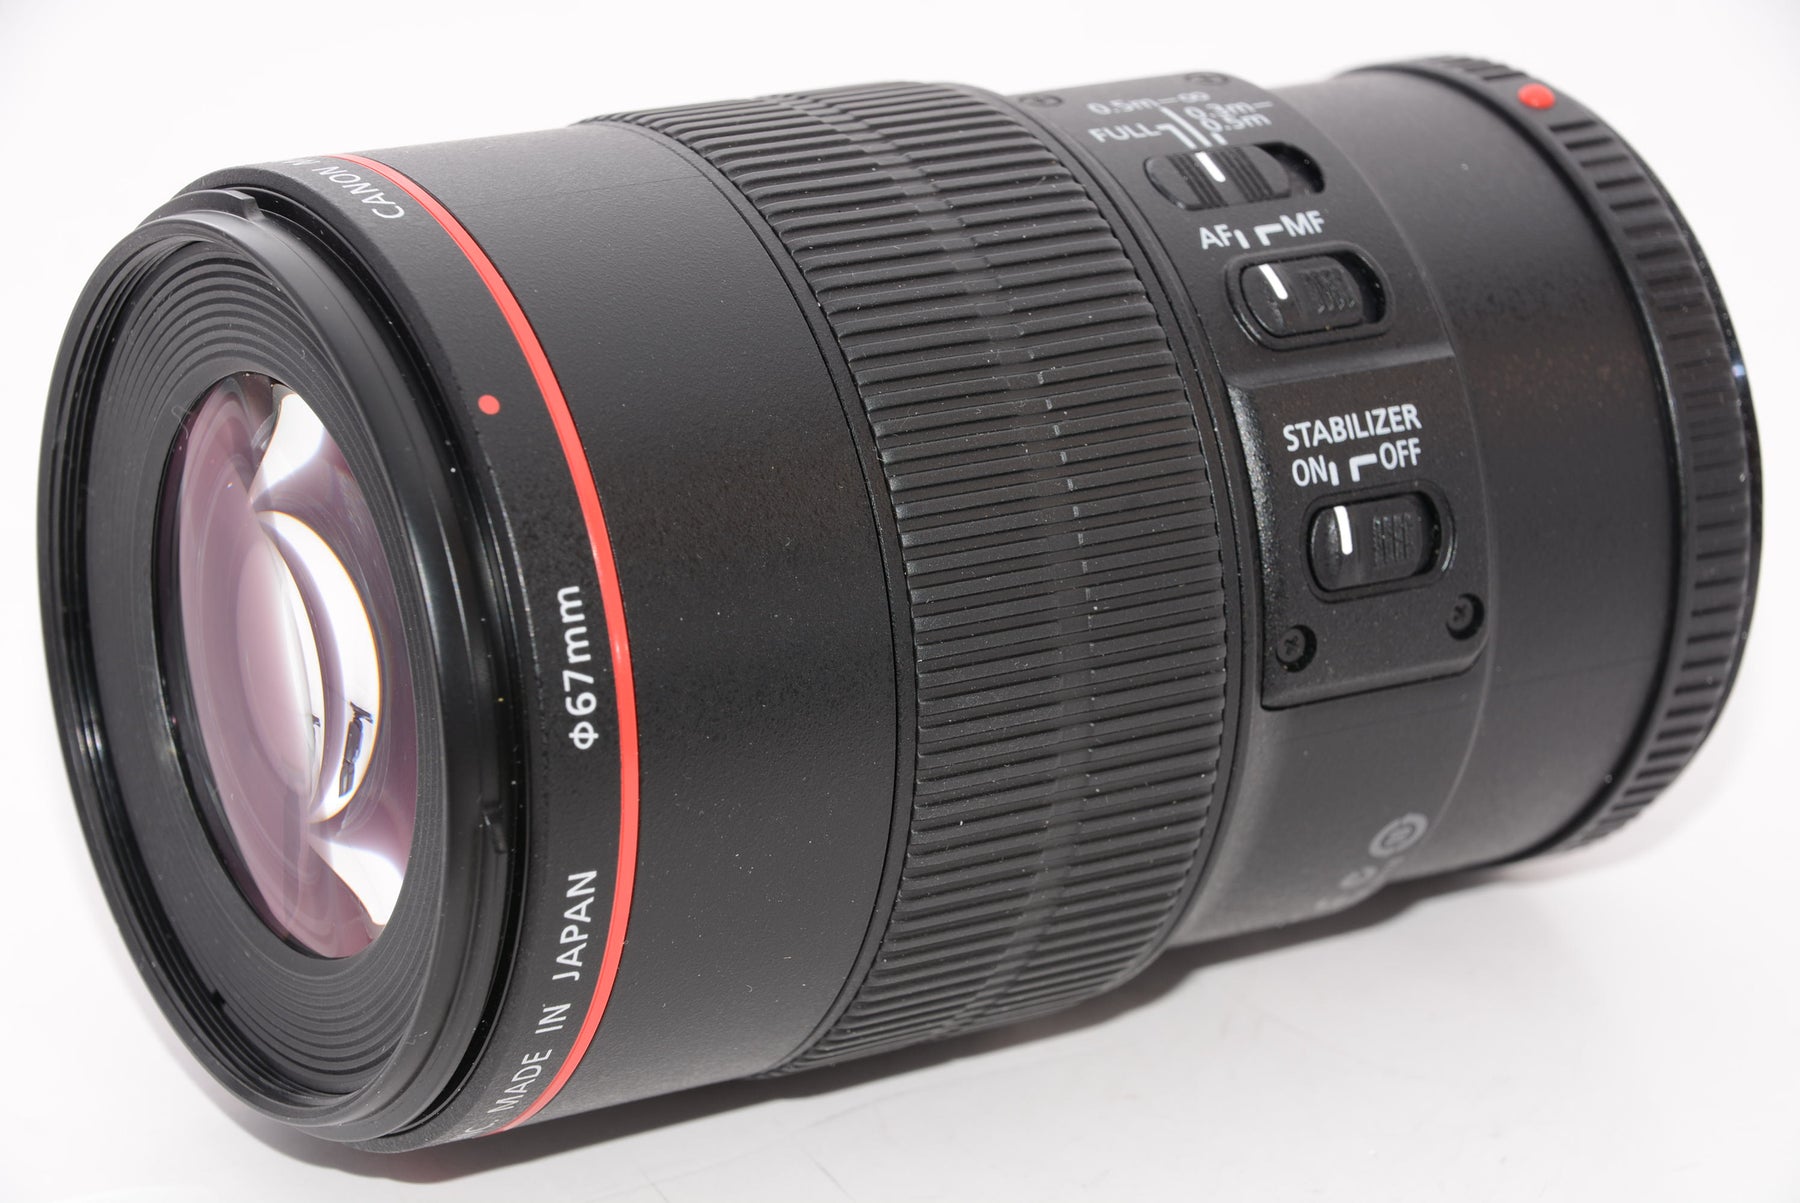 Canon 単焦点マクロレンズ EF100mm F2.8 マクロ USM フルサイズ対応-